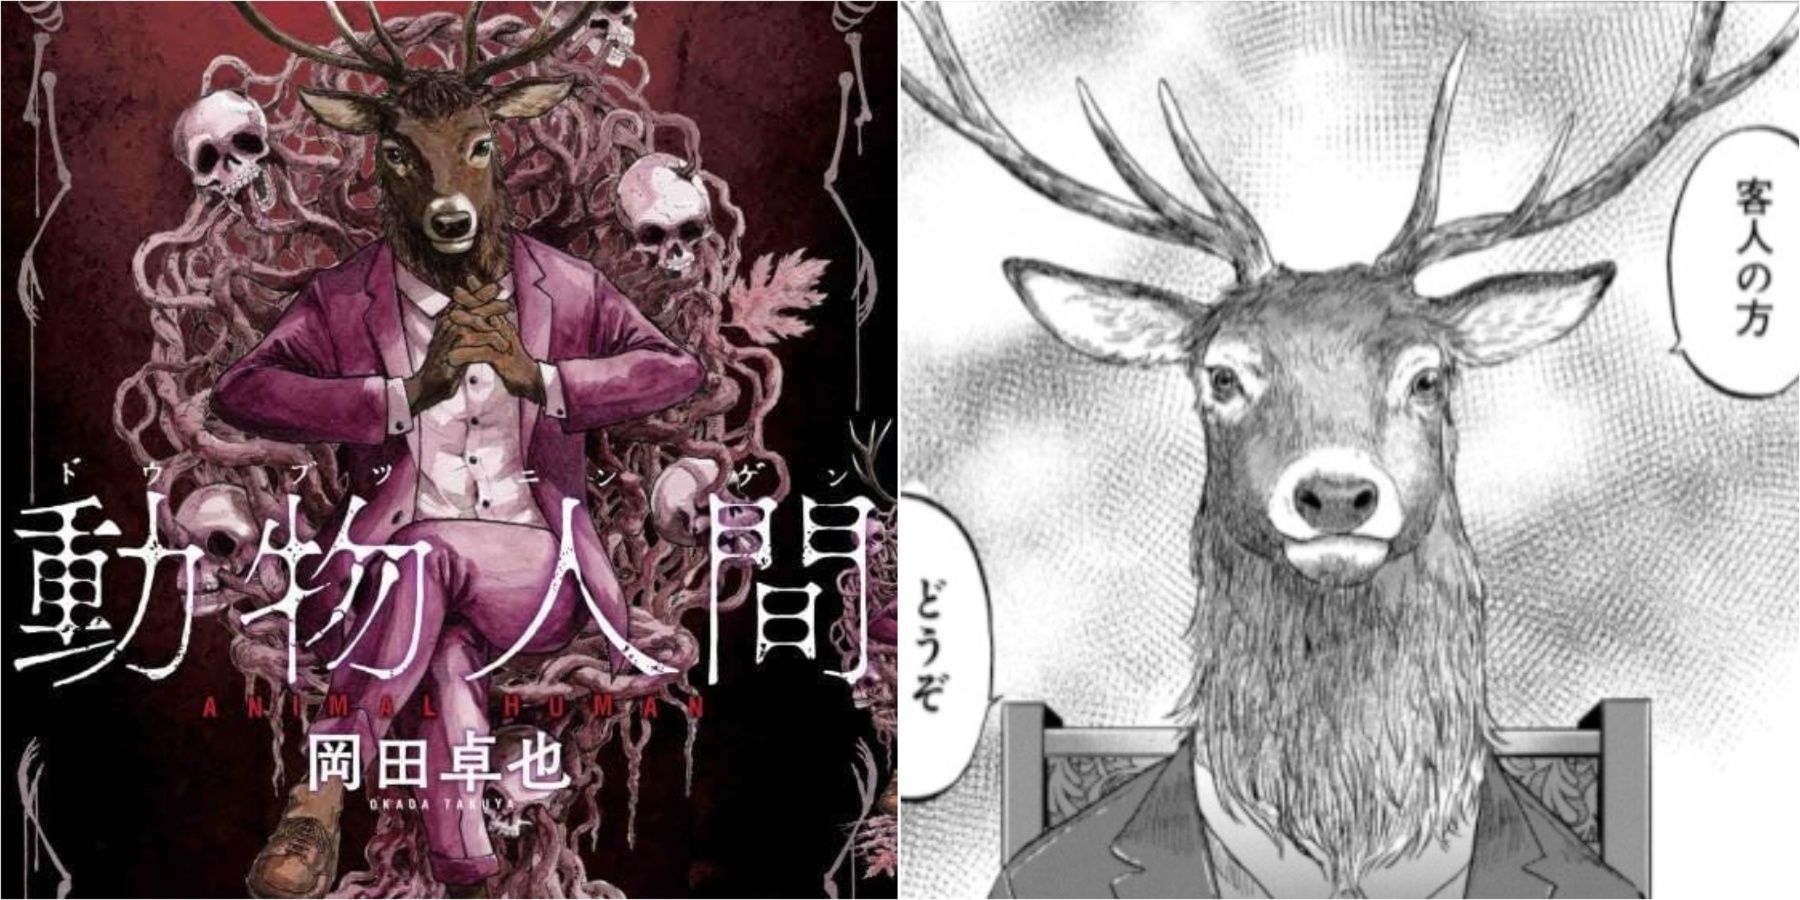 Dobutsu Ningen Horror Manga